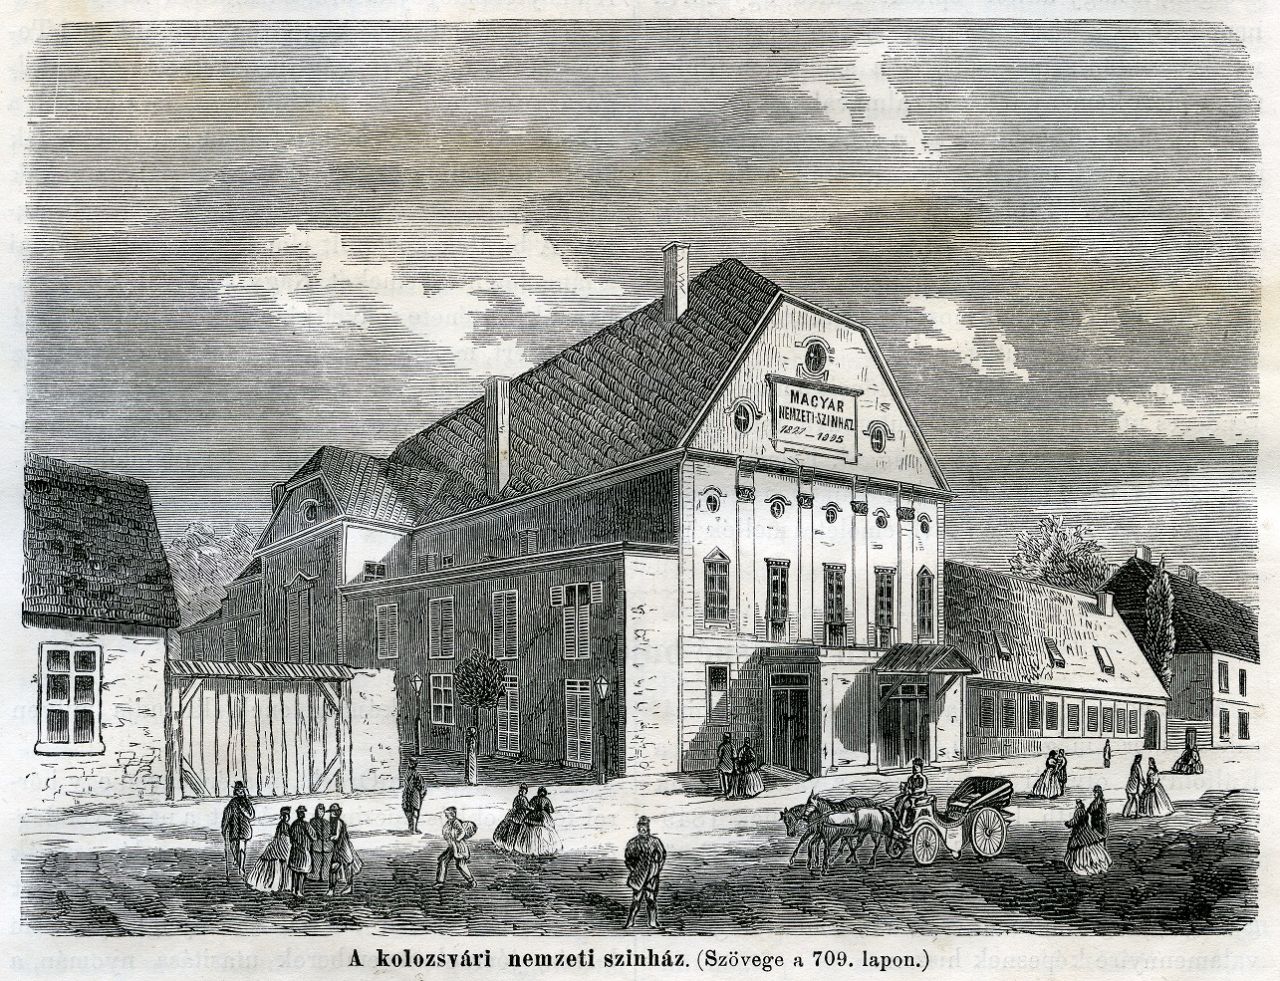 Prima clădire de teatru din Cluj a funcţionat pe actuala stradă Mihail Kogălniceanu aproape 90 de ani, între 1821 - 1906. FOTO Gravură publicată în revista Hazánk sa Külföld folyóirat, din Budapesta în 1867